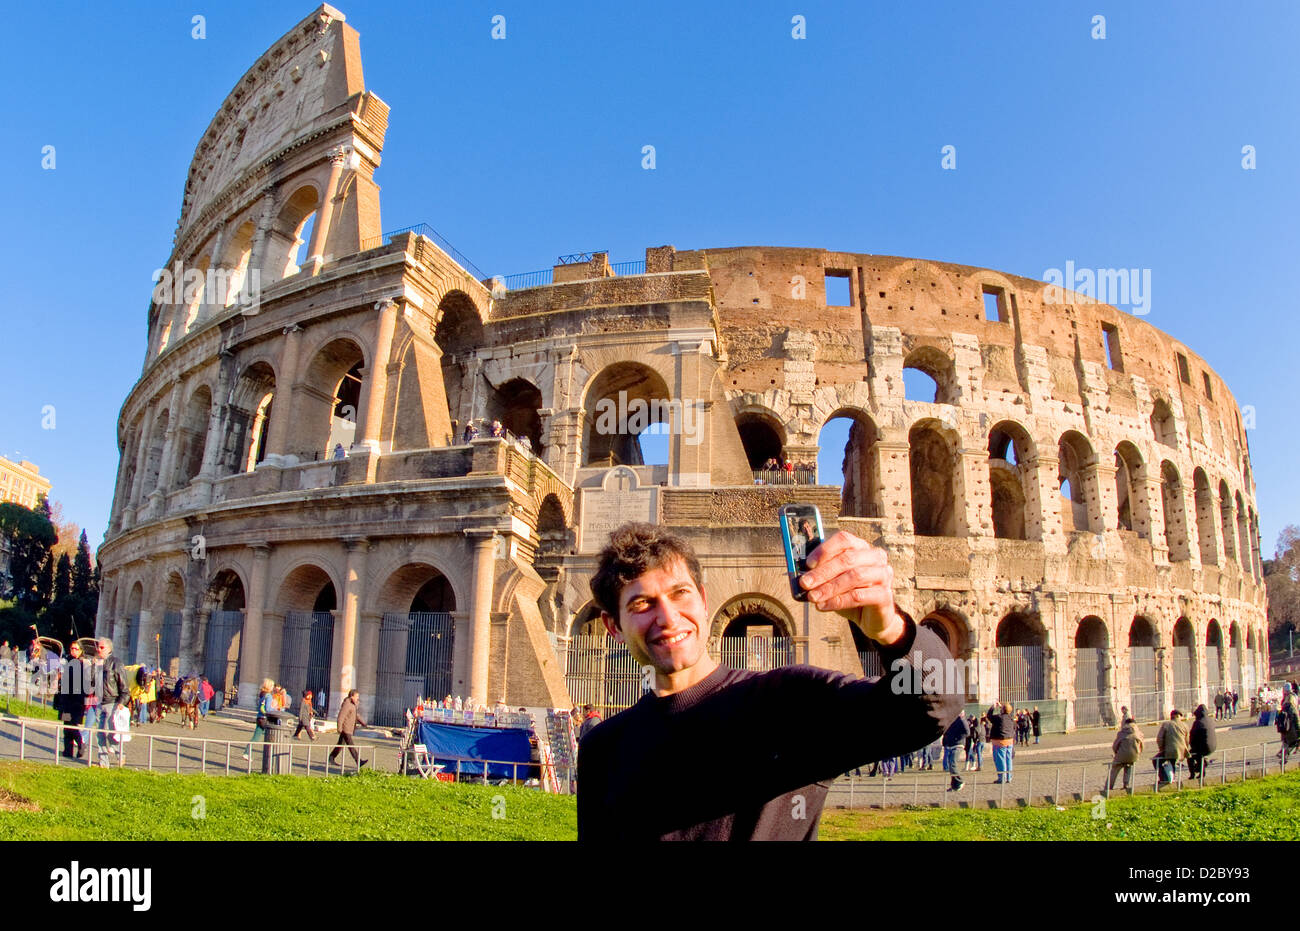 Italian Man Taking Photo At Colosseum, Rome, Italy Stock Photo